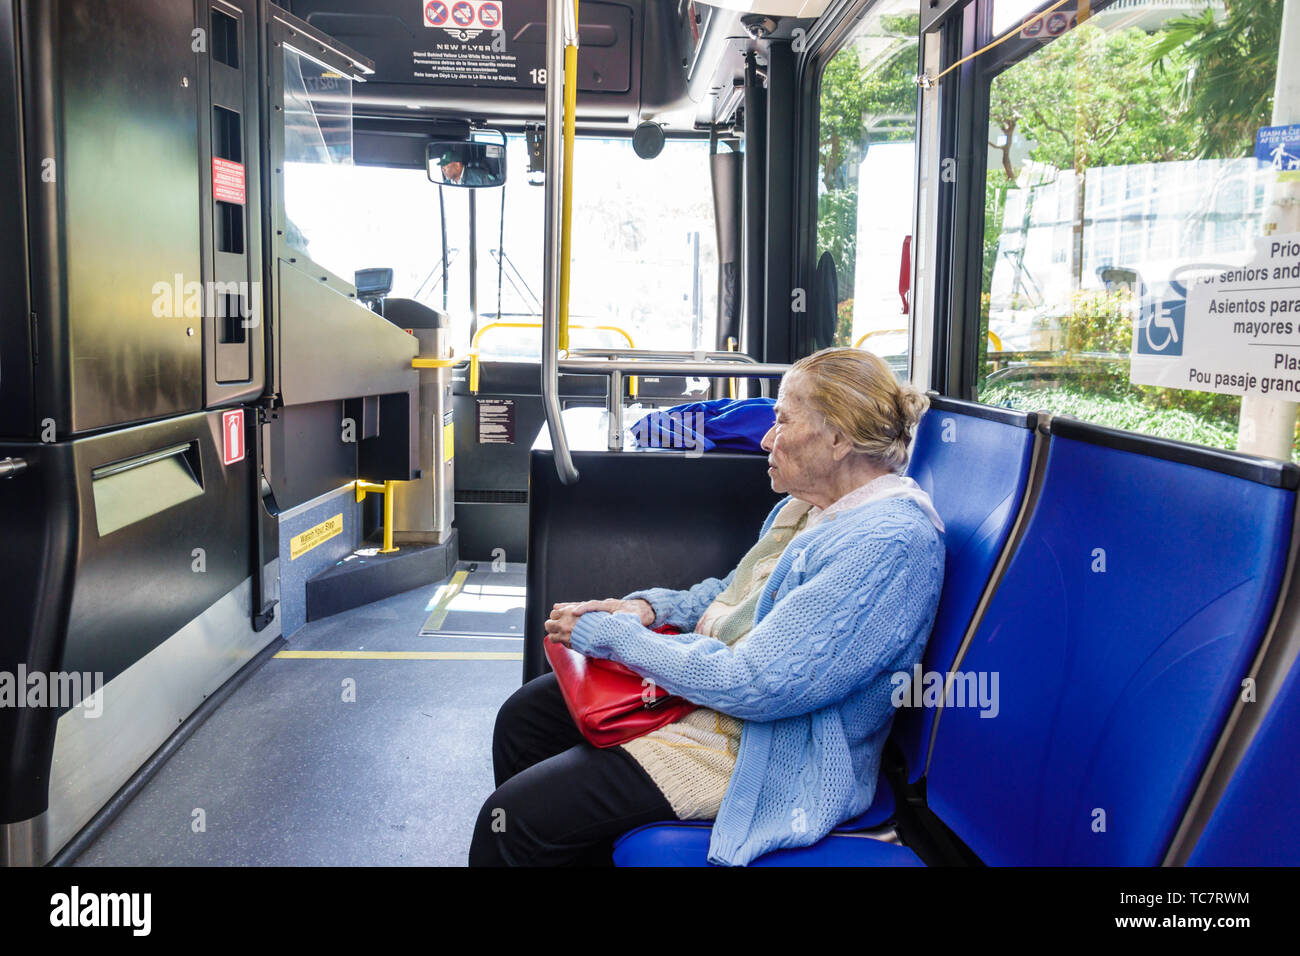 Miami Beach Florida,Miami-Dade Metrobus,bus inside onboard,senior seniors citizen citizens,Hispanic woman female women,rider passenger,FL190331095 Stock Photo